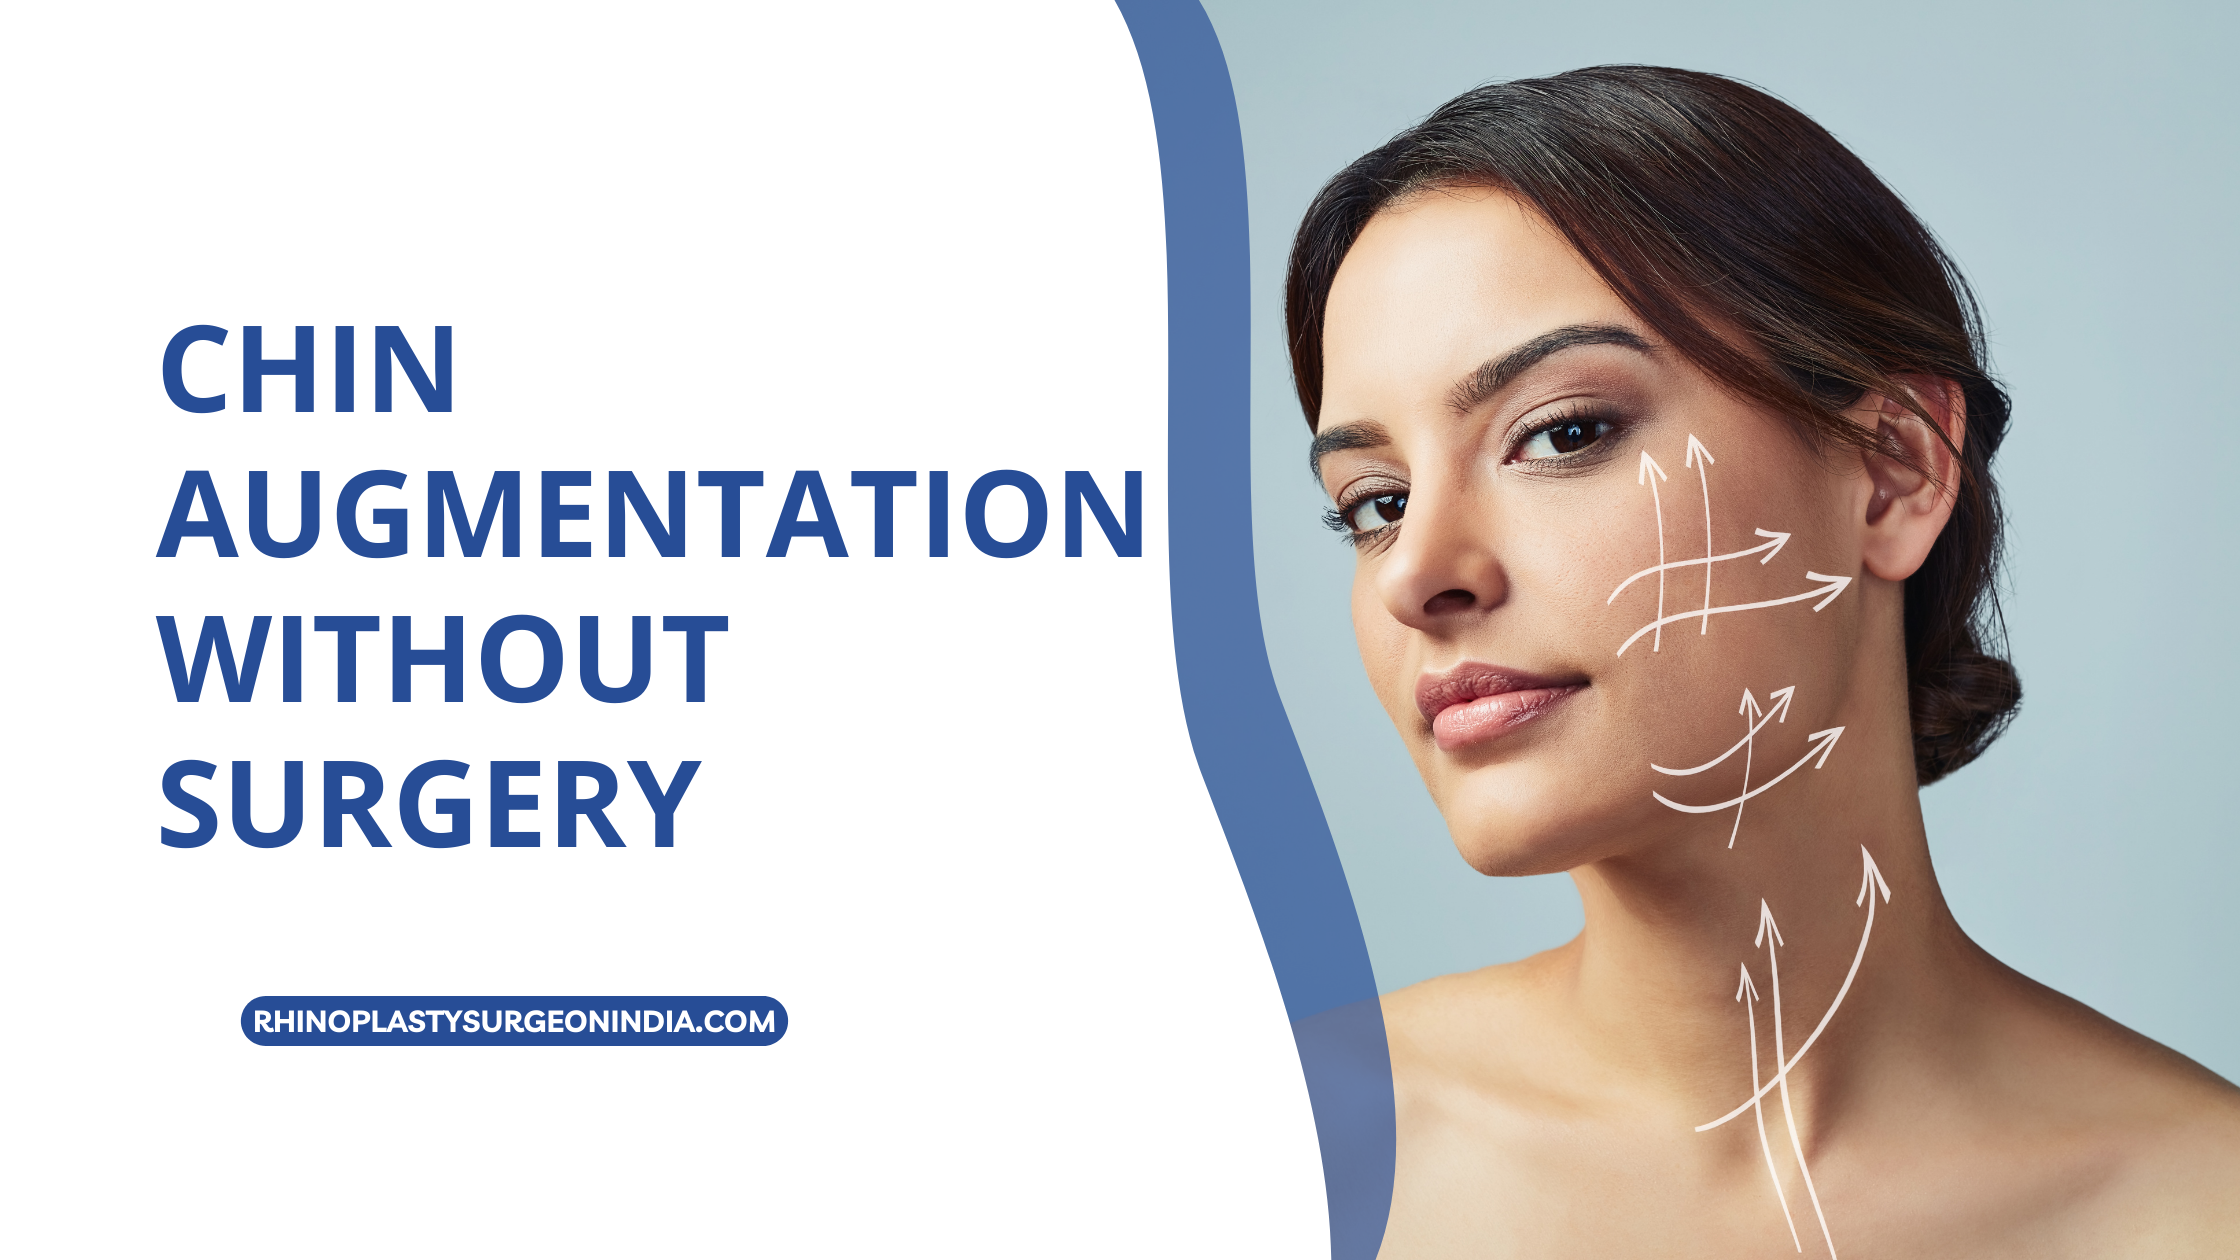 Chin Augmentation without surgery